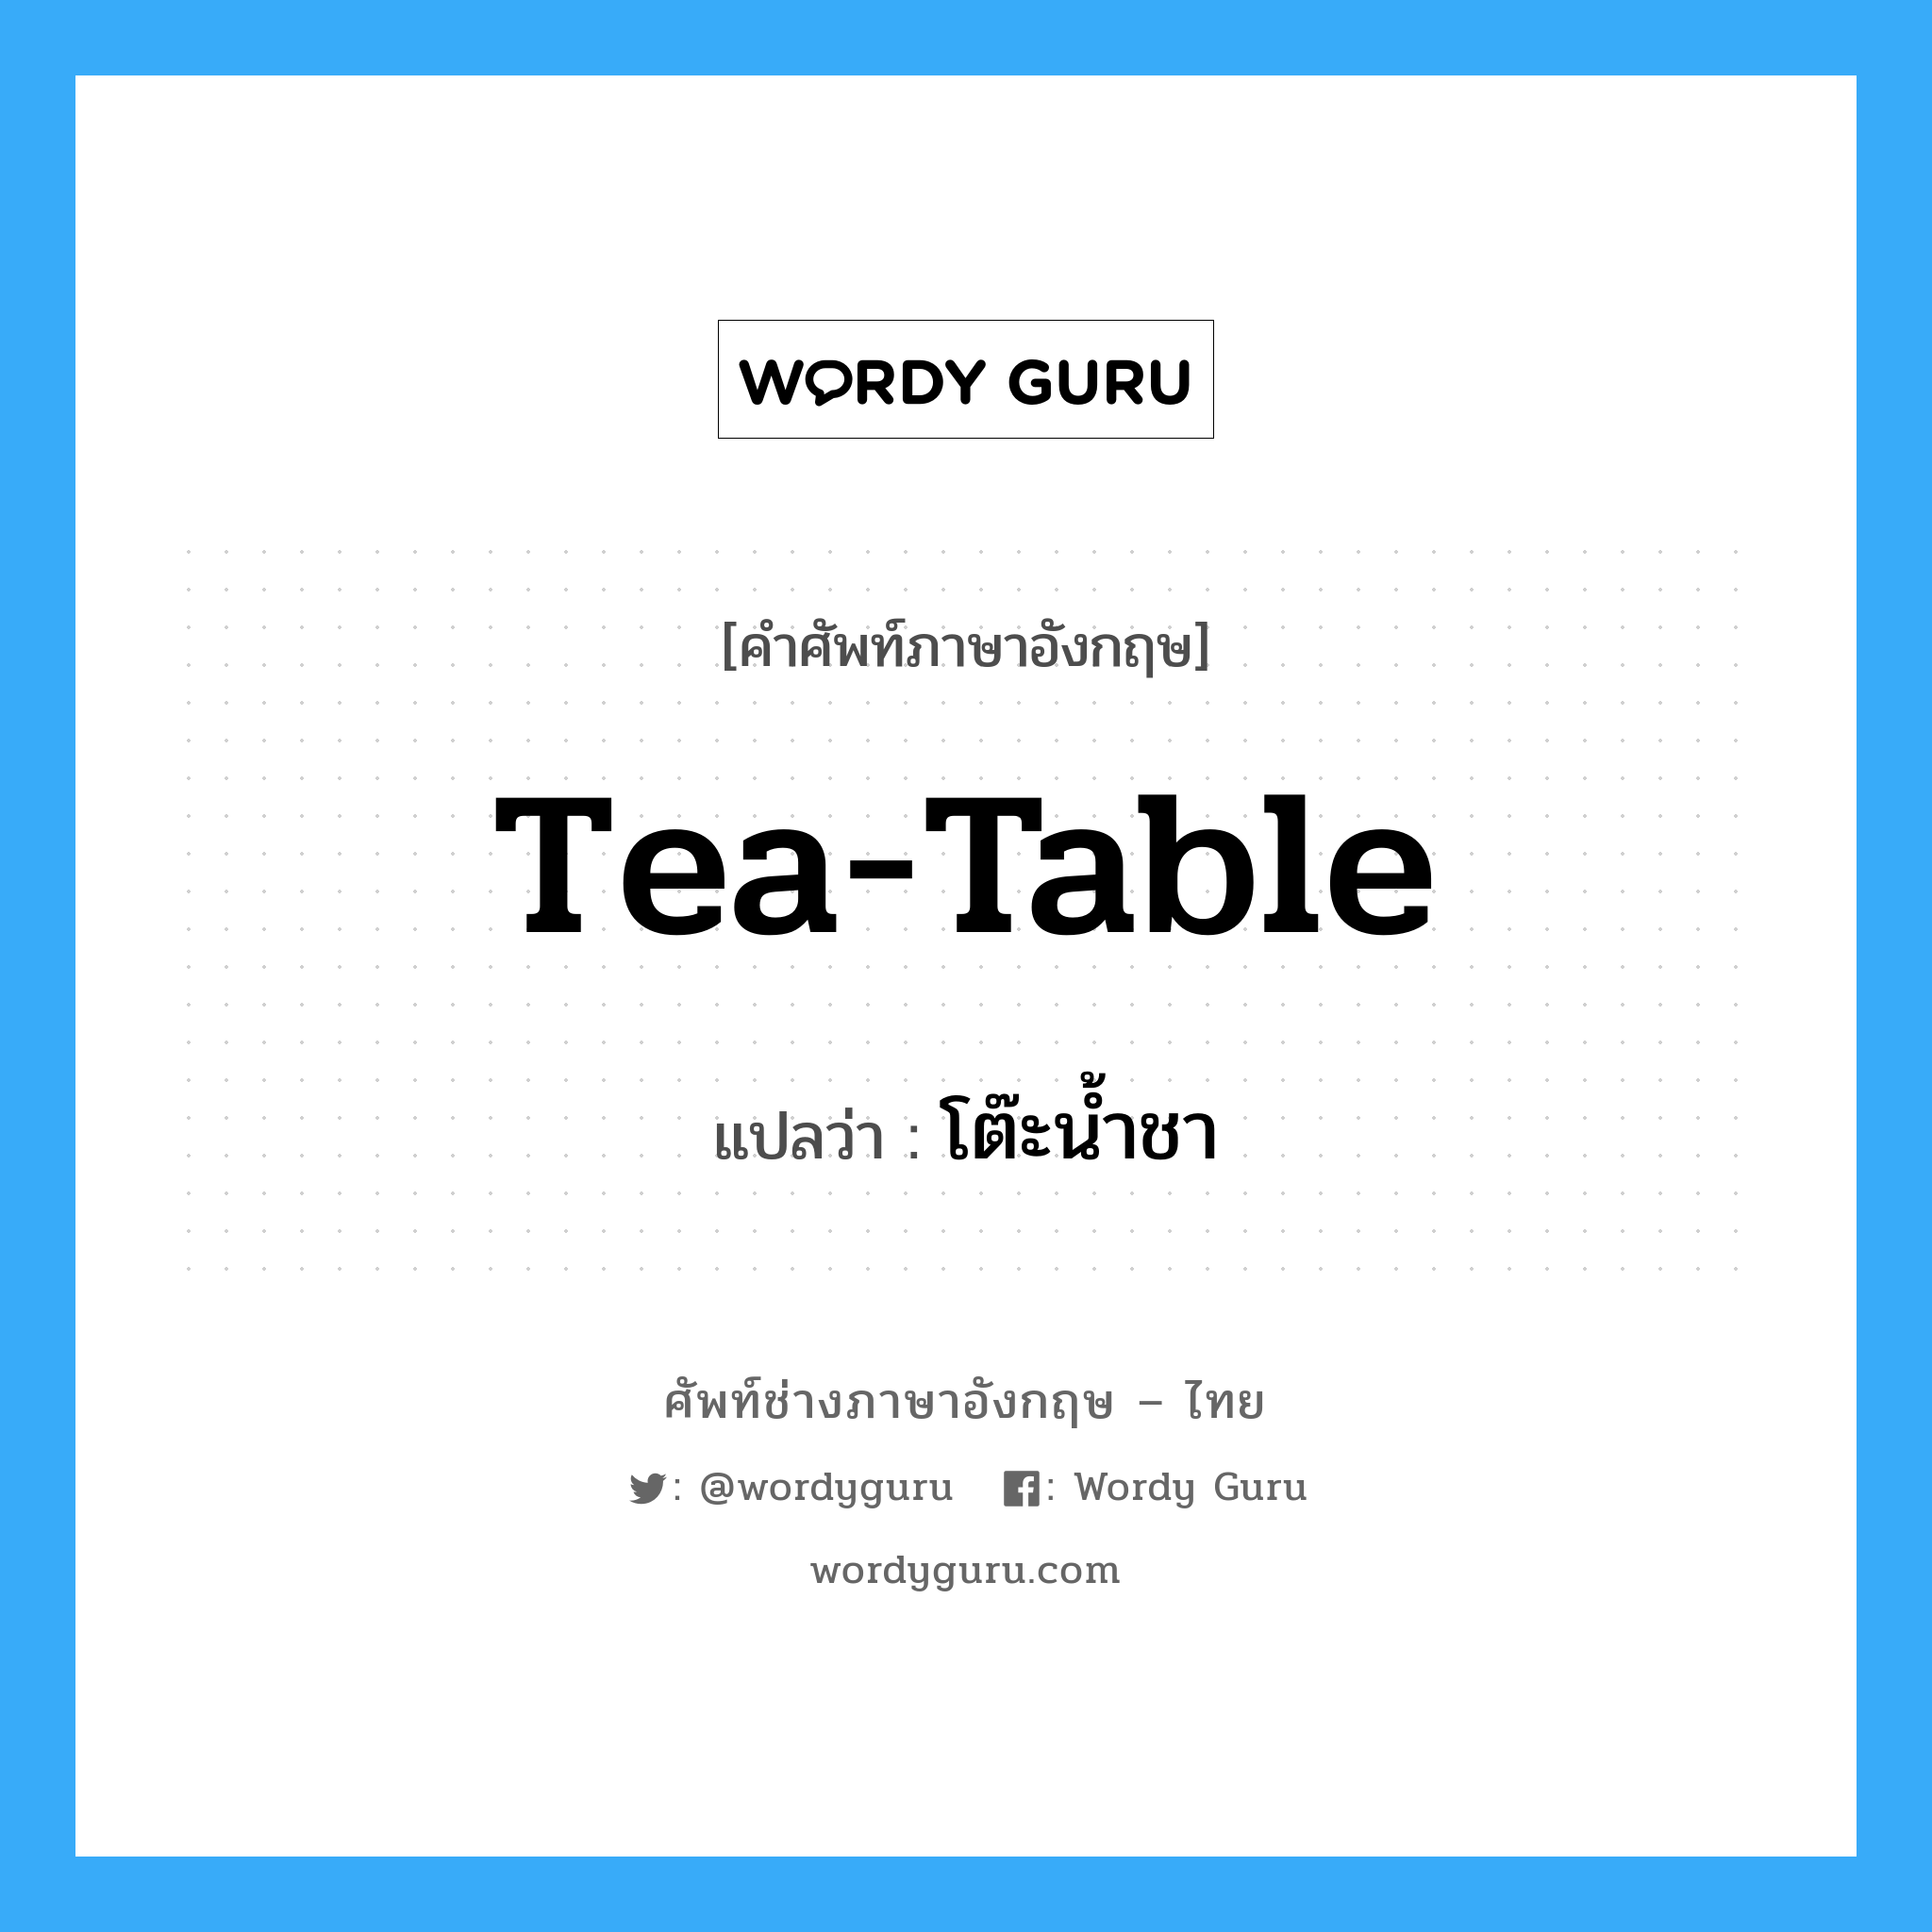 โต๊ะน้ำชา ภาษาอังกฤษ?, คำศัพท์ช่างภาษาอังกฤษ - ไทย โต๊ะน้ำชา คำศัพท์ภาษาอังกฤษ โต๊ะน้ำชา แปลว่า tea-table